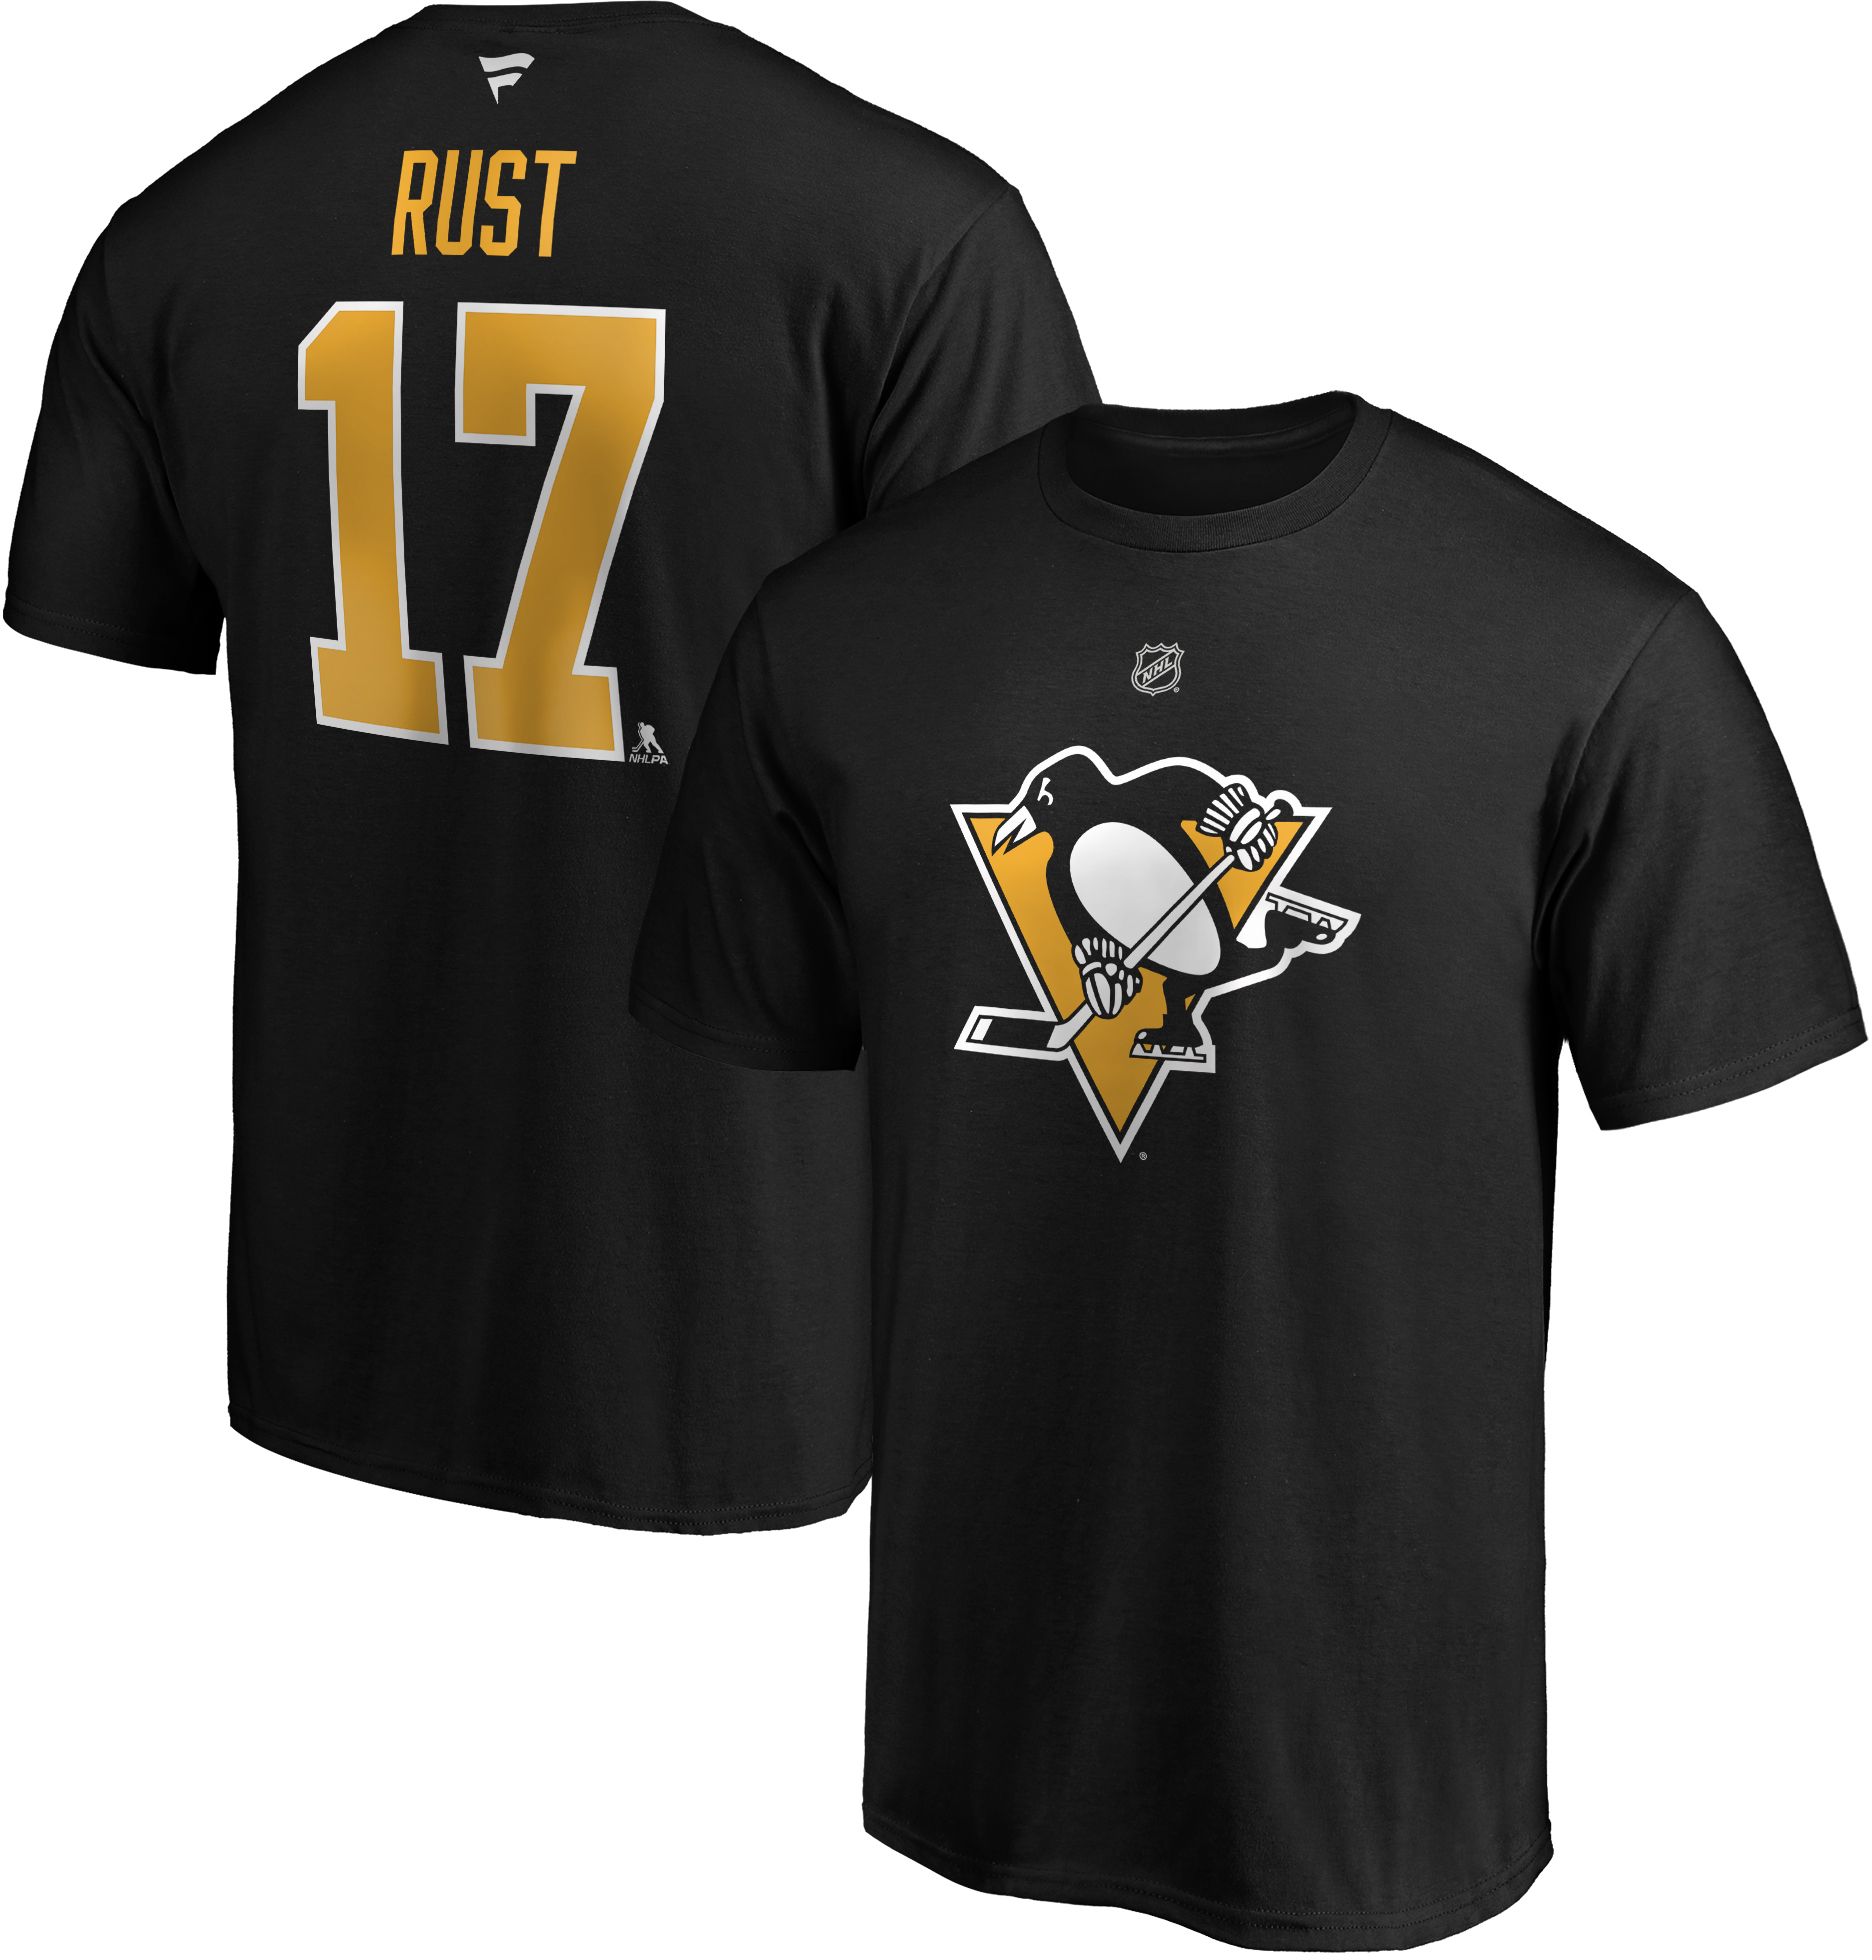 Bryan Rust #17 Black Player T-Shirt 